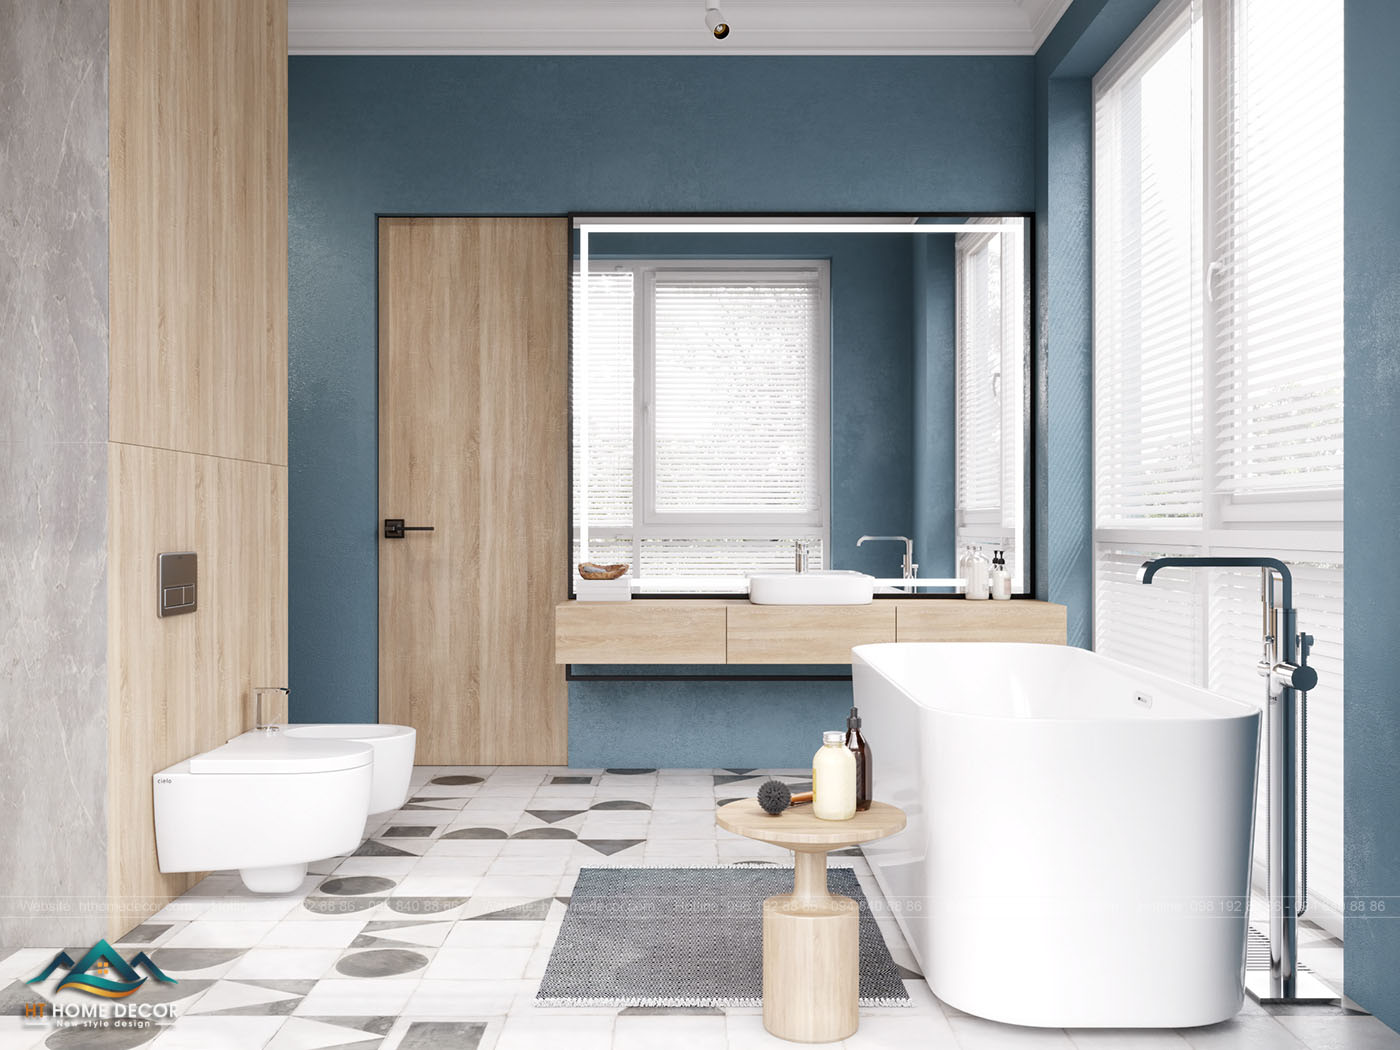 Nếu tone xanh lá của phòng khác hướng về cây cối. Thì tone xanh dương của  phòng tắm sẽ hướng về bầu trời. Phòng tắm rộng rãi sử dụng những đồ vật gỗ thân thiện với thiên nhiên.